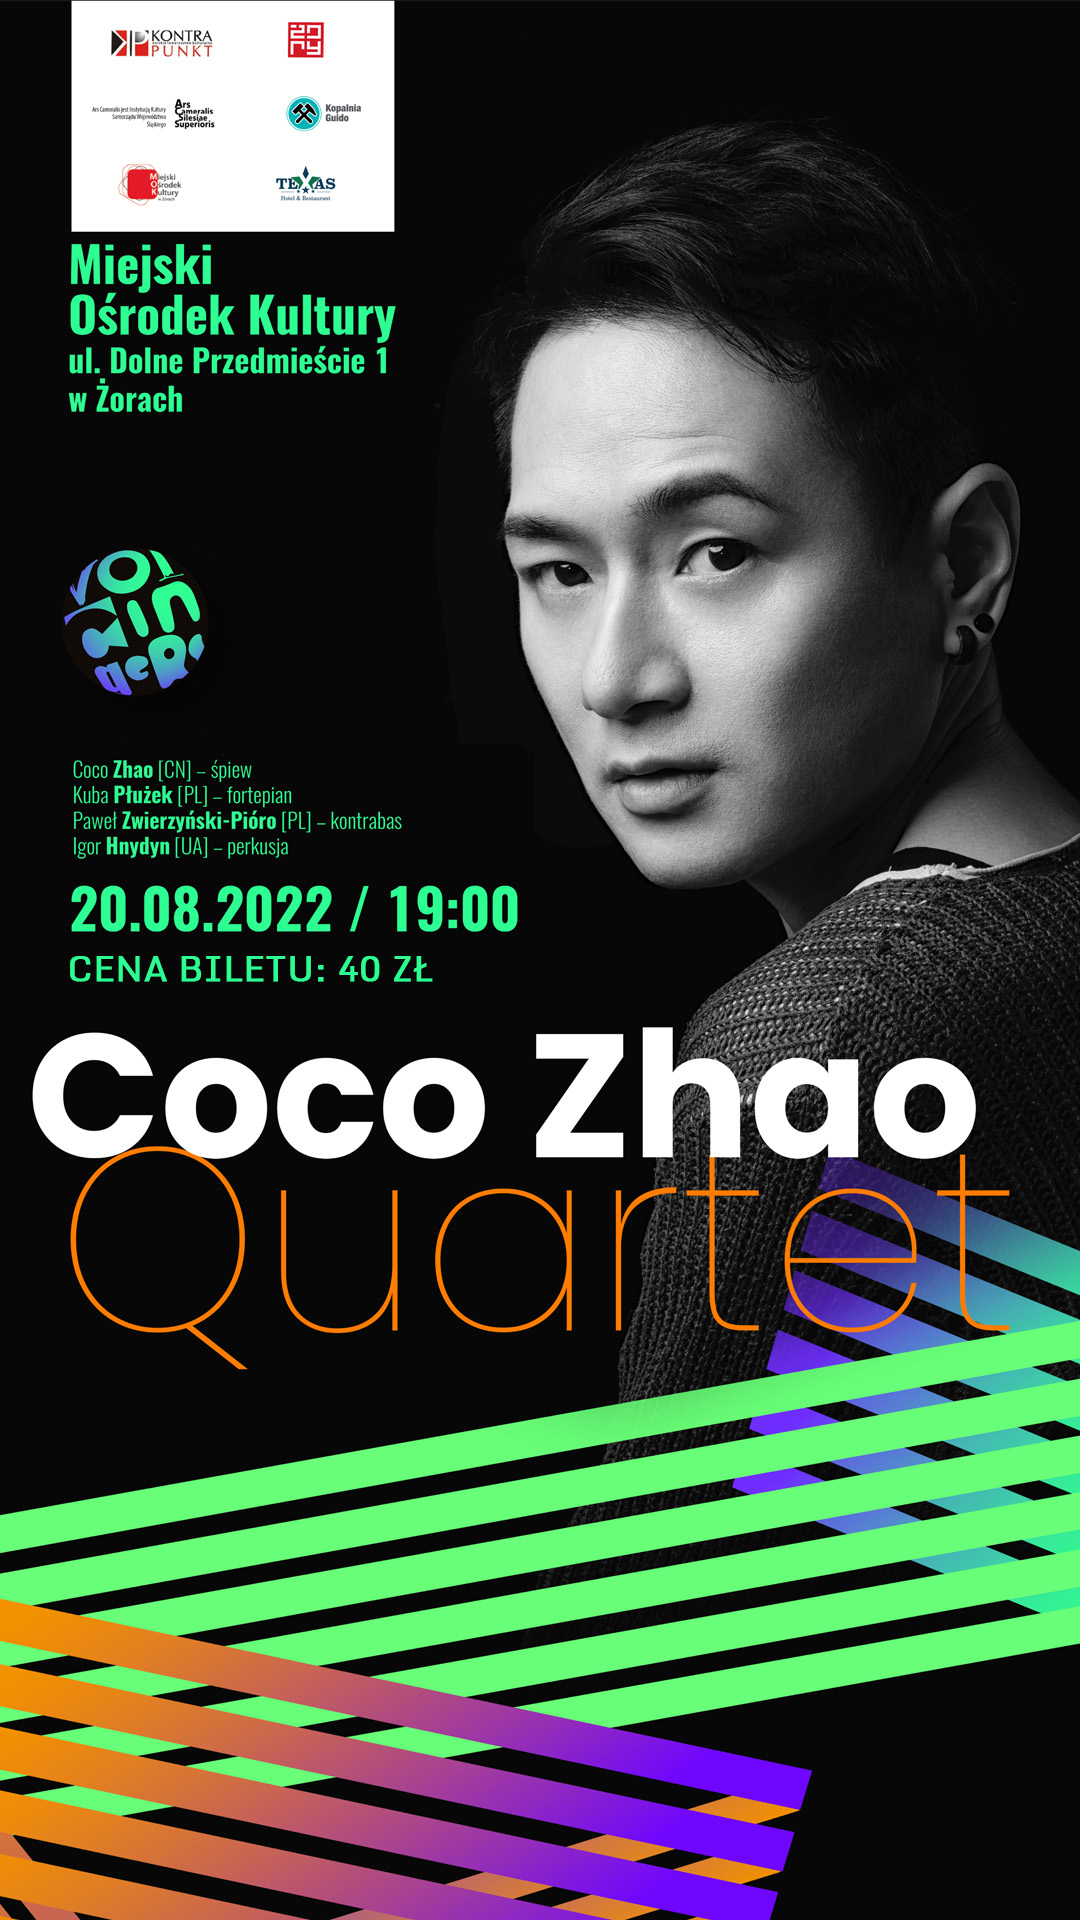 fotografia artysty na czarnym tle oraz informacje o terminie koncertu Coco Zhao 01.08 godz. 19:00 cena biletu: 40 zł.